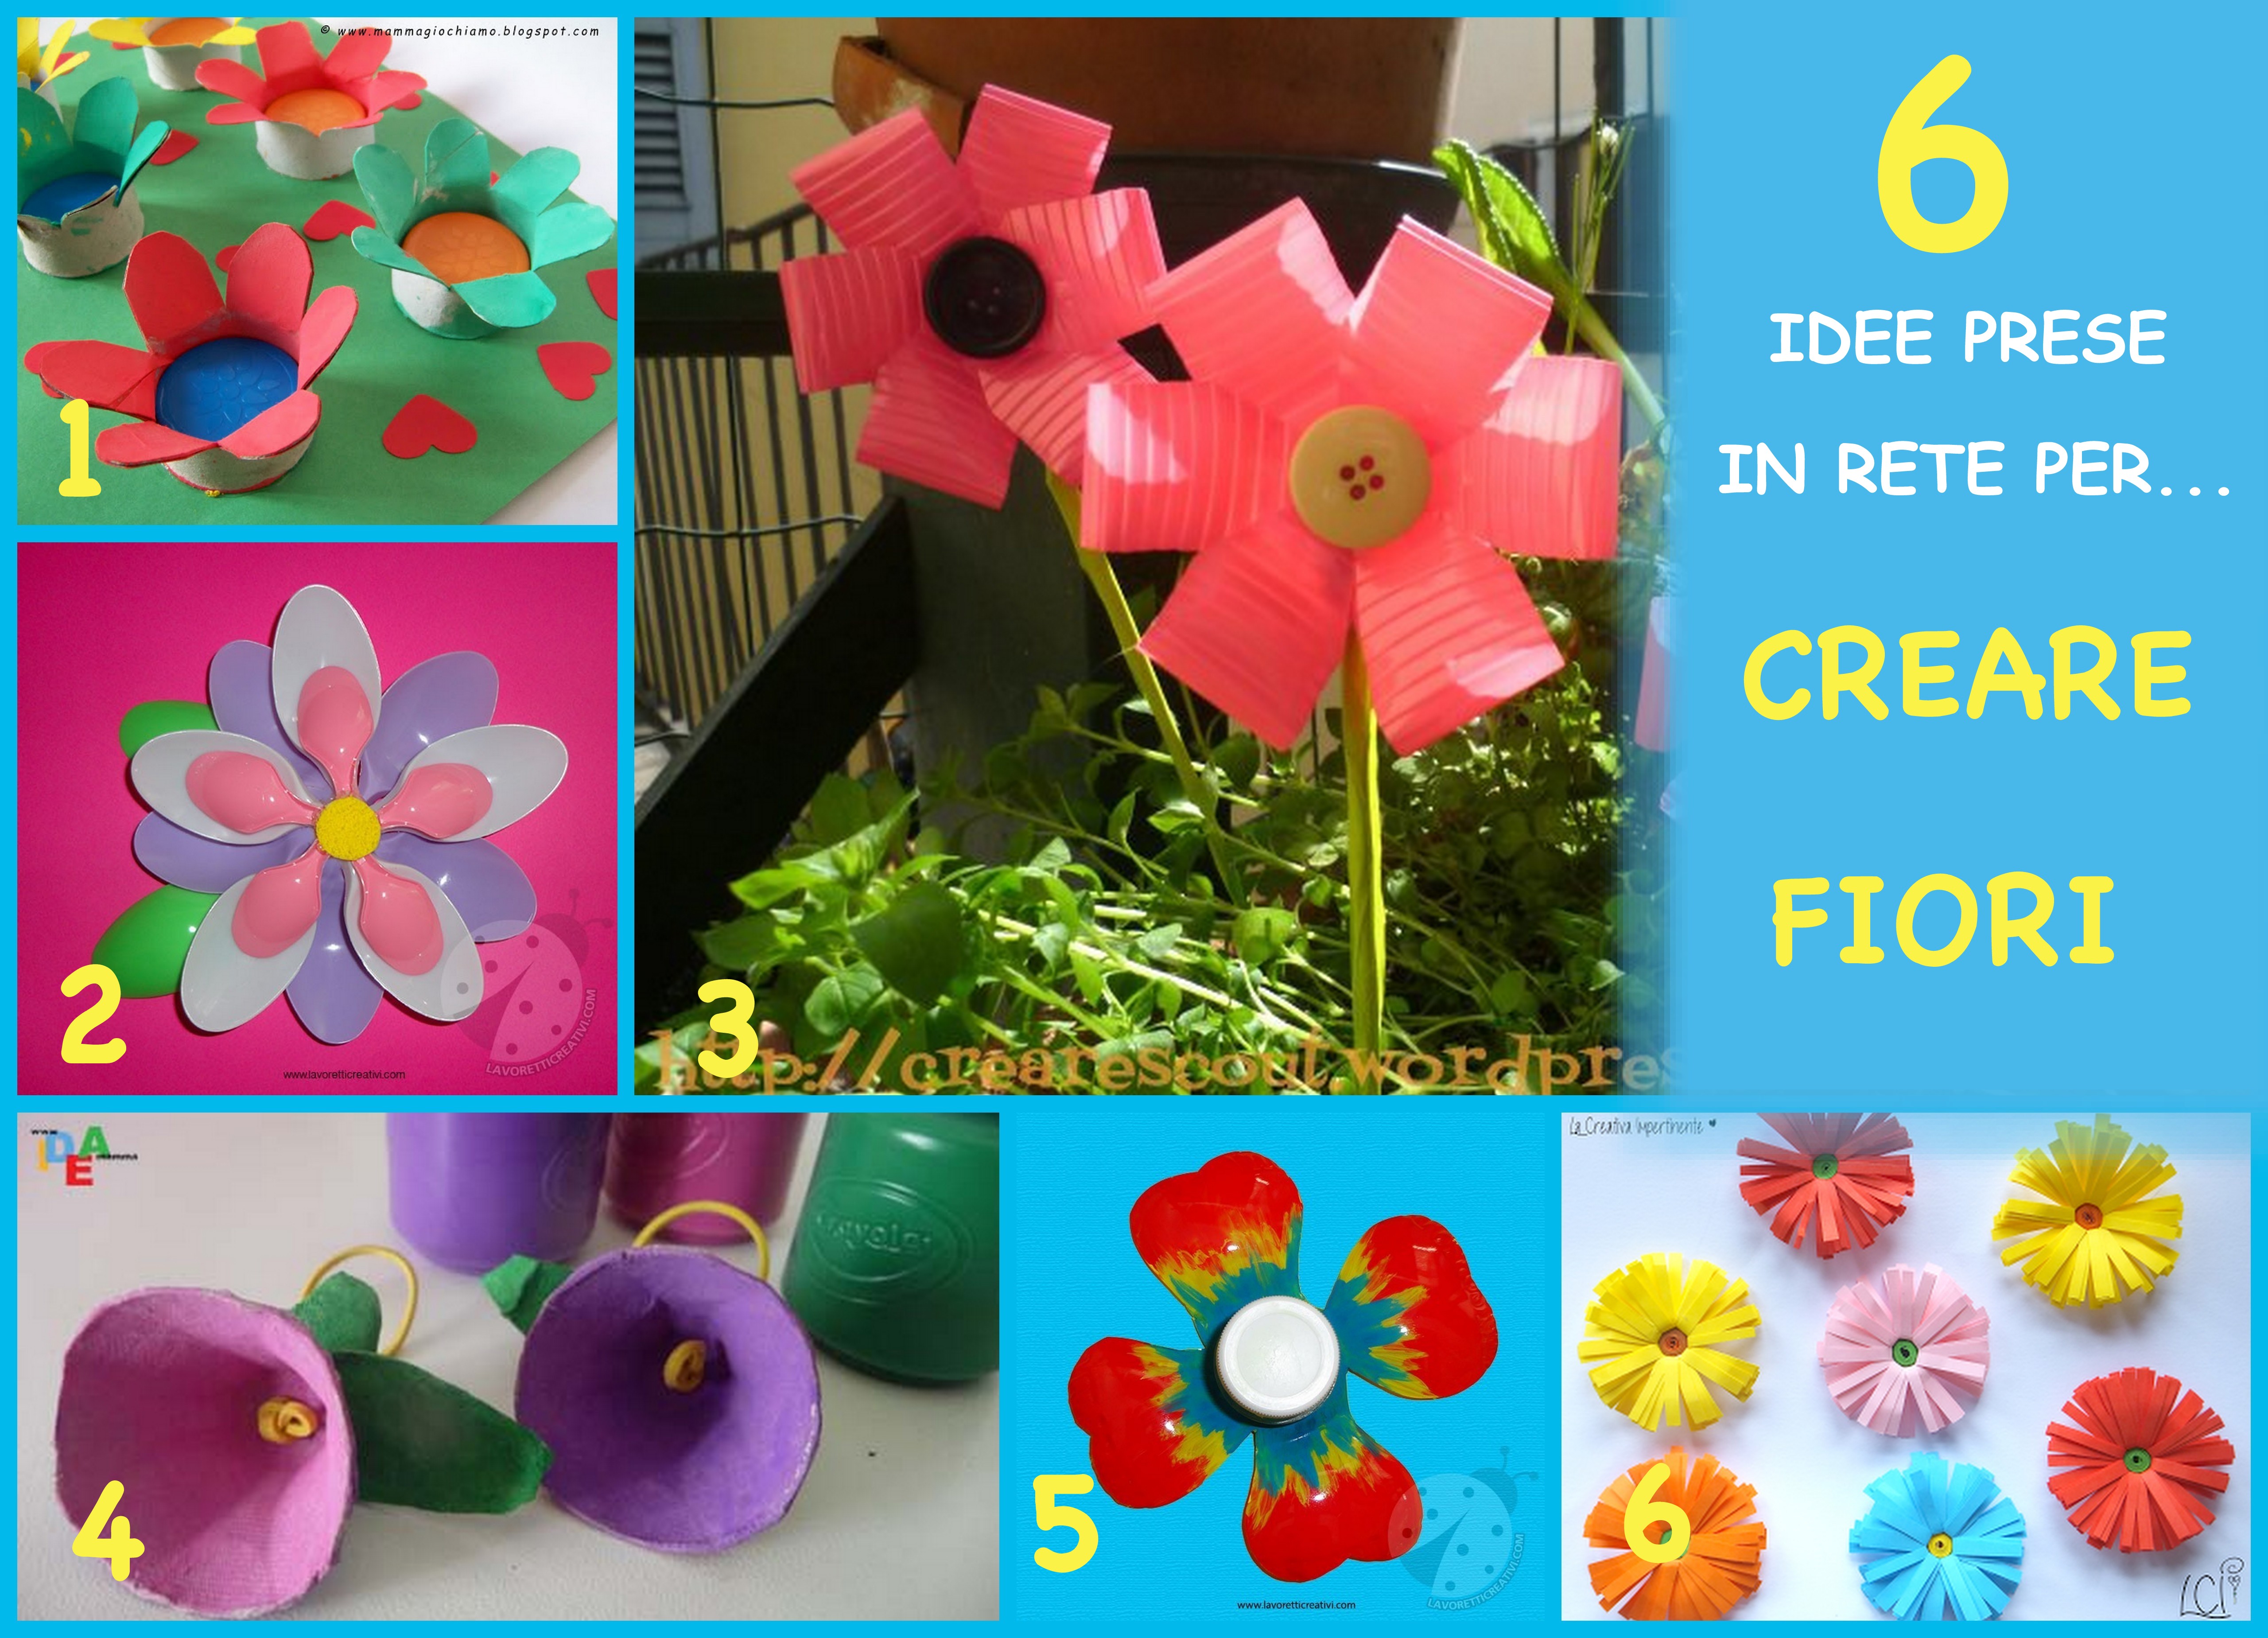 creare fiori con tappi, cartone, carta e bottiglie